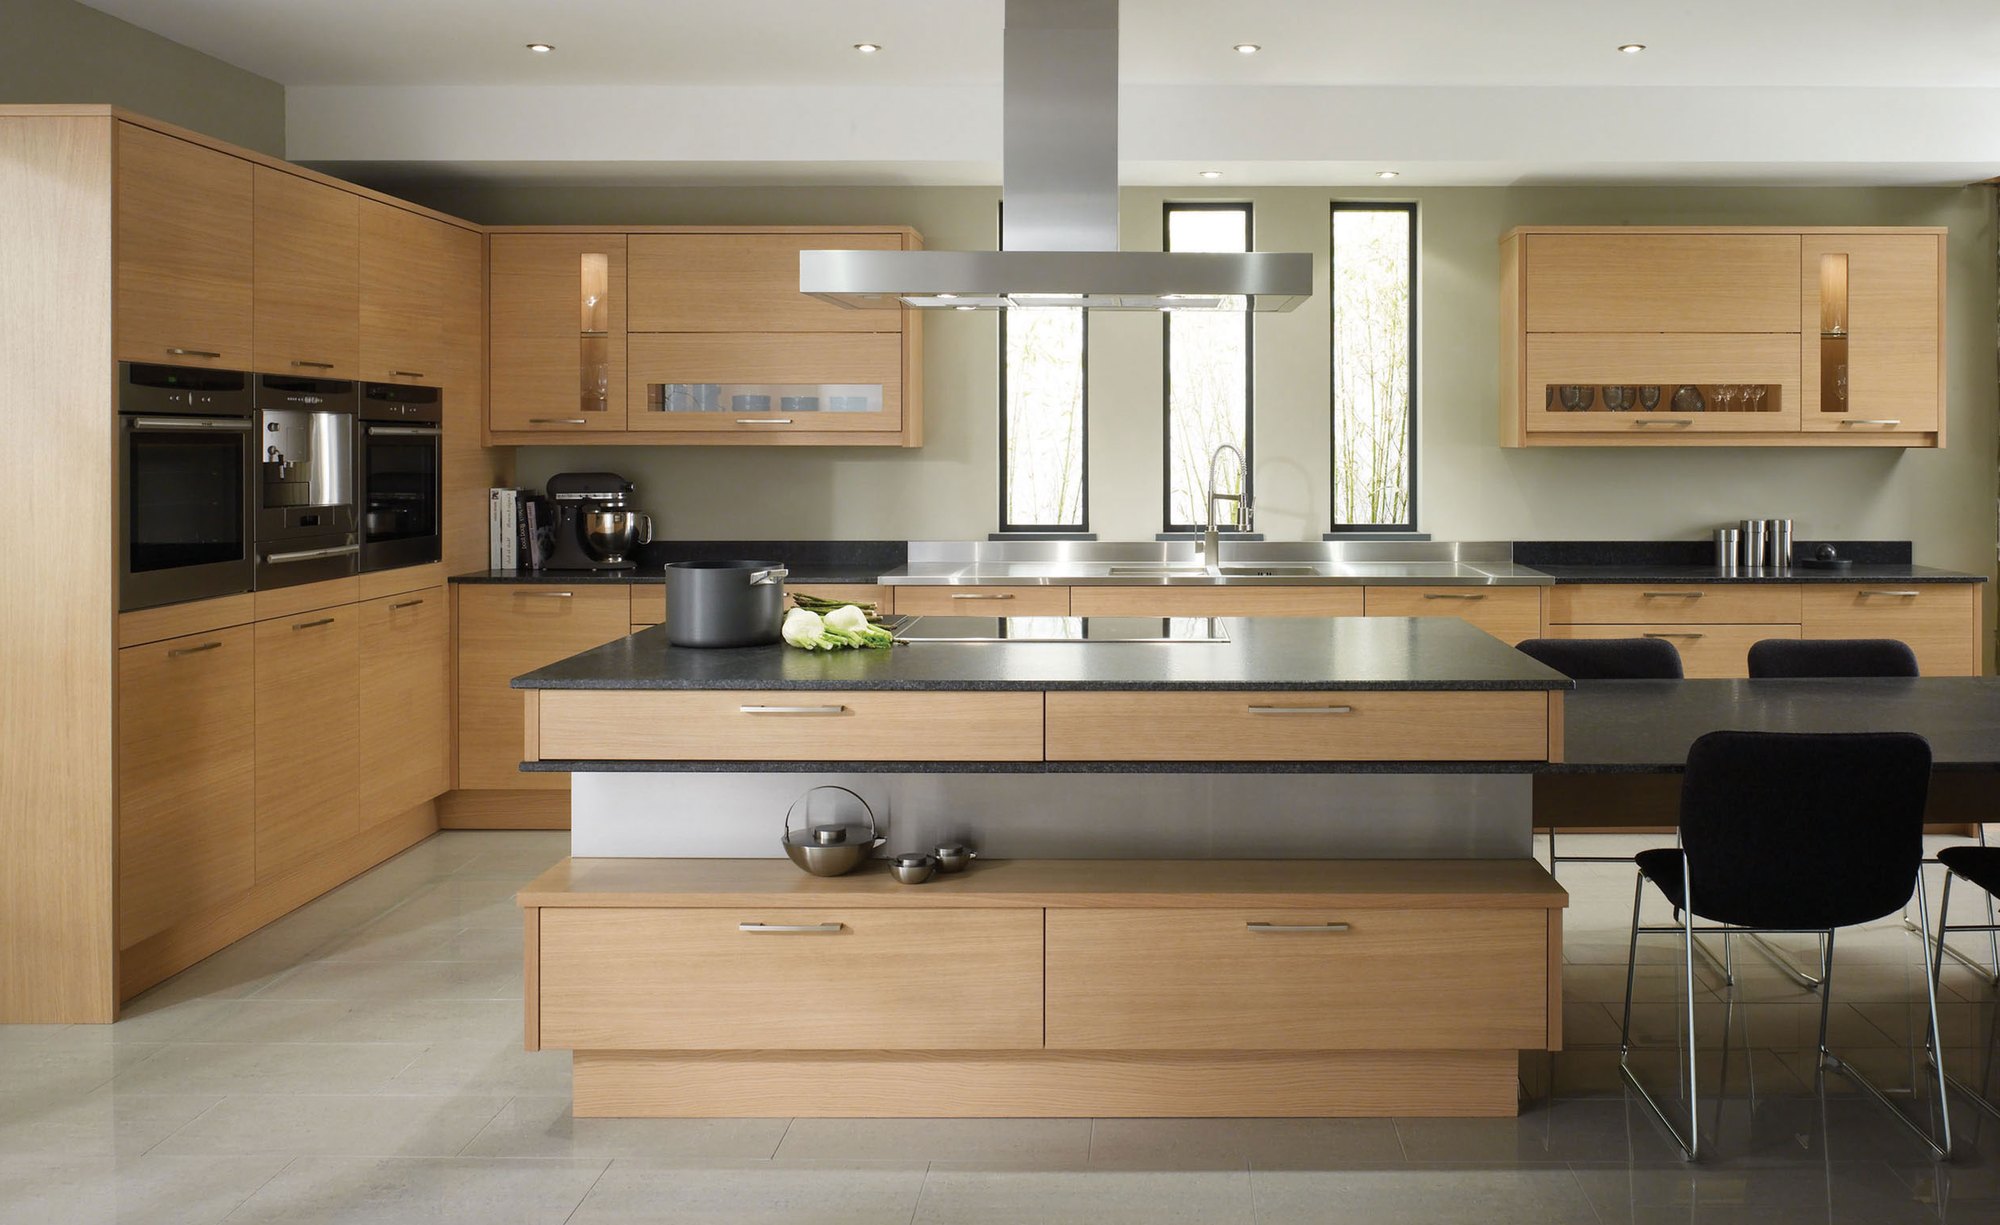 remodel beige kitchen design